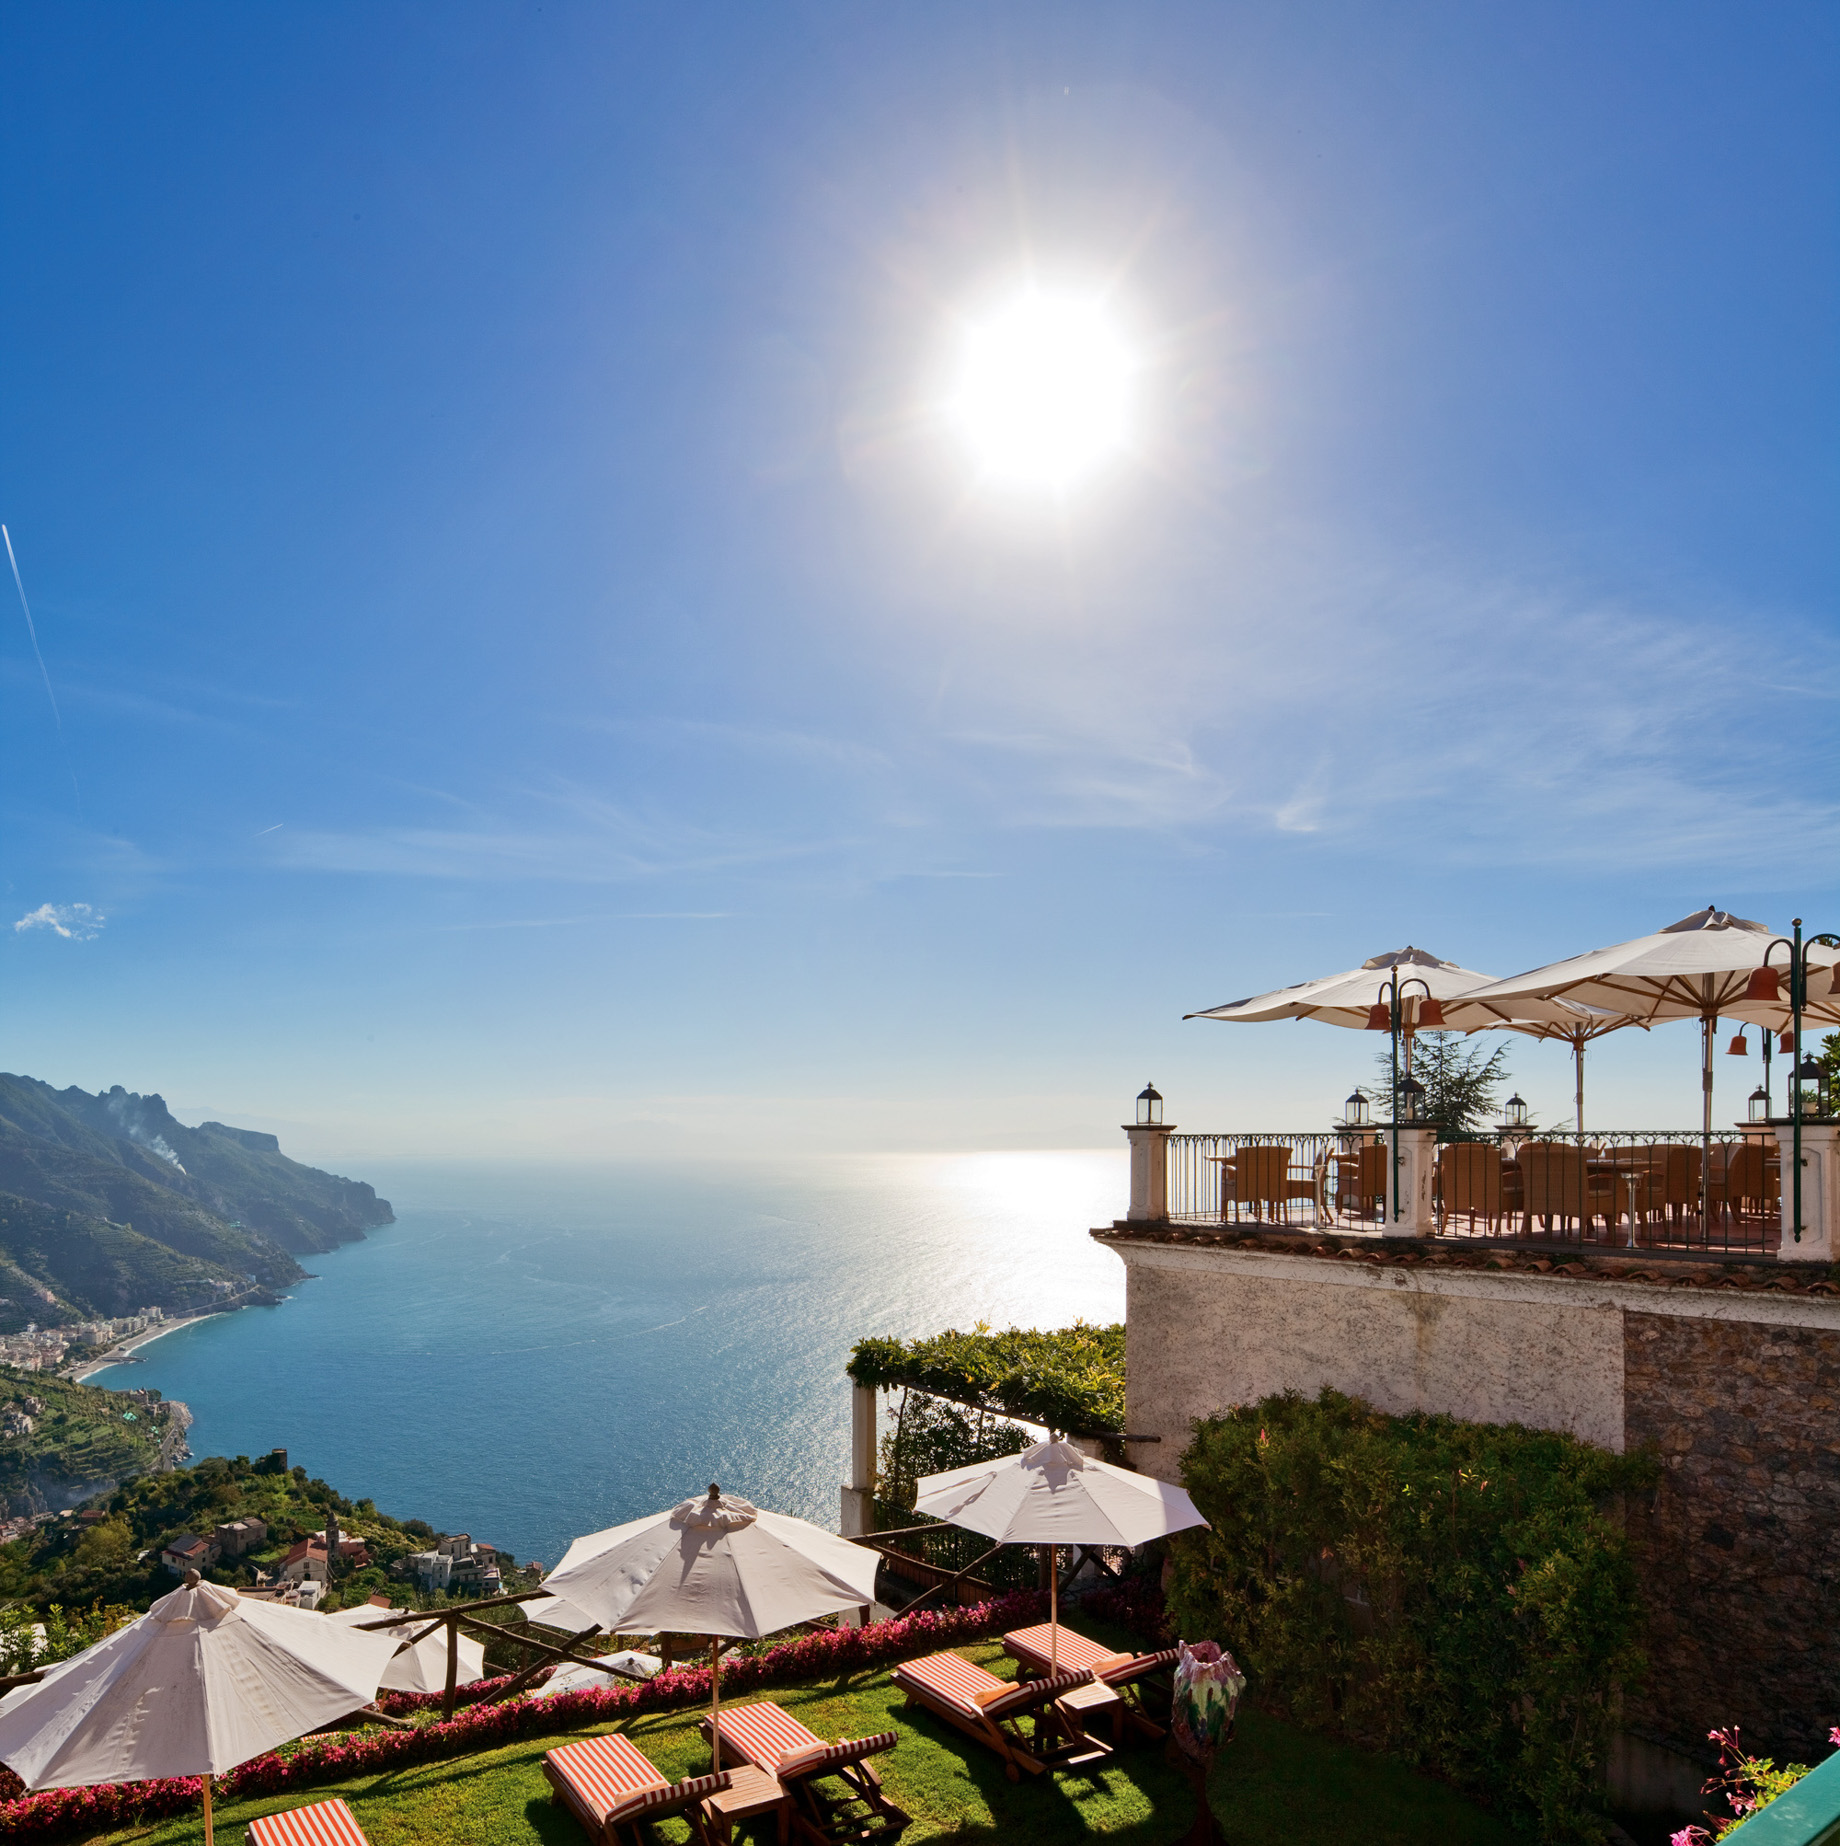 Palazzo Avino Hotel – Amalfi Coast, Ravello, Italy – Ocean View